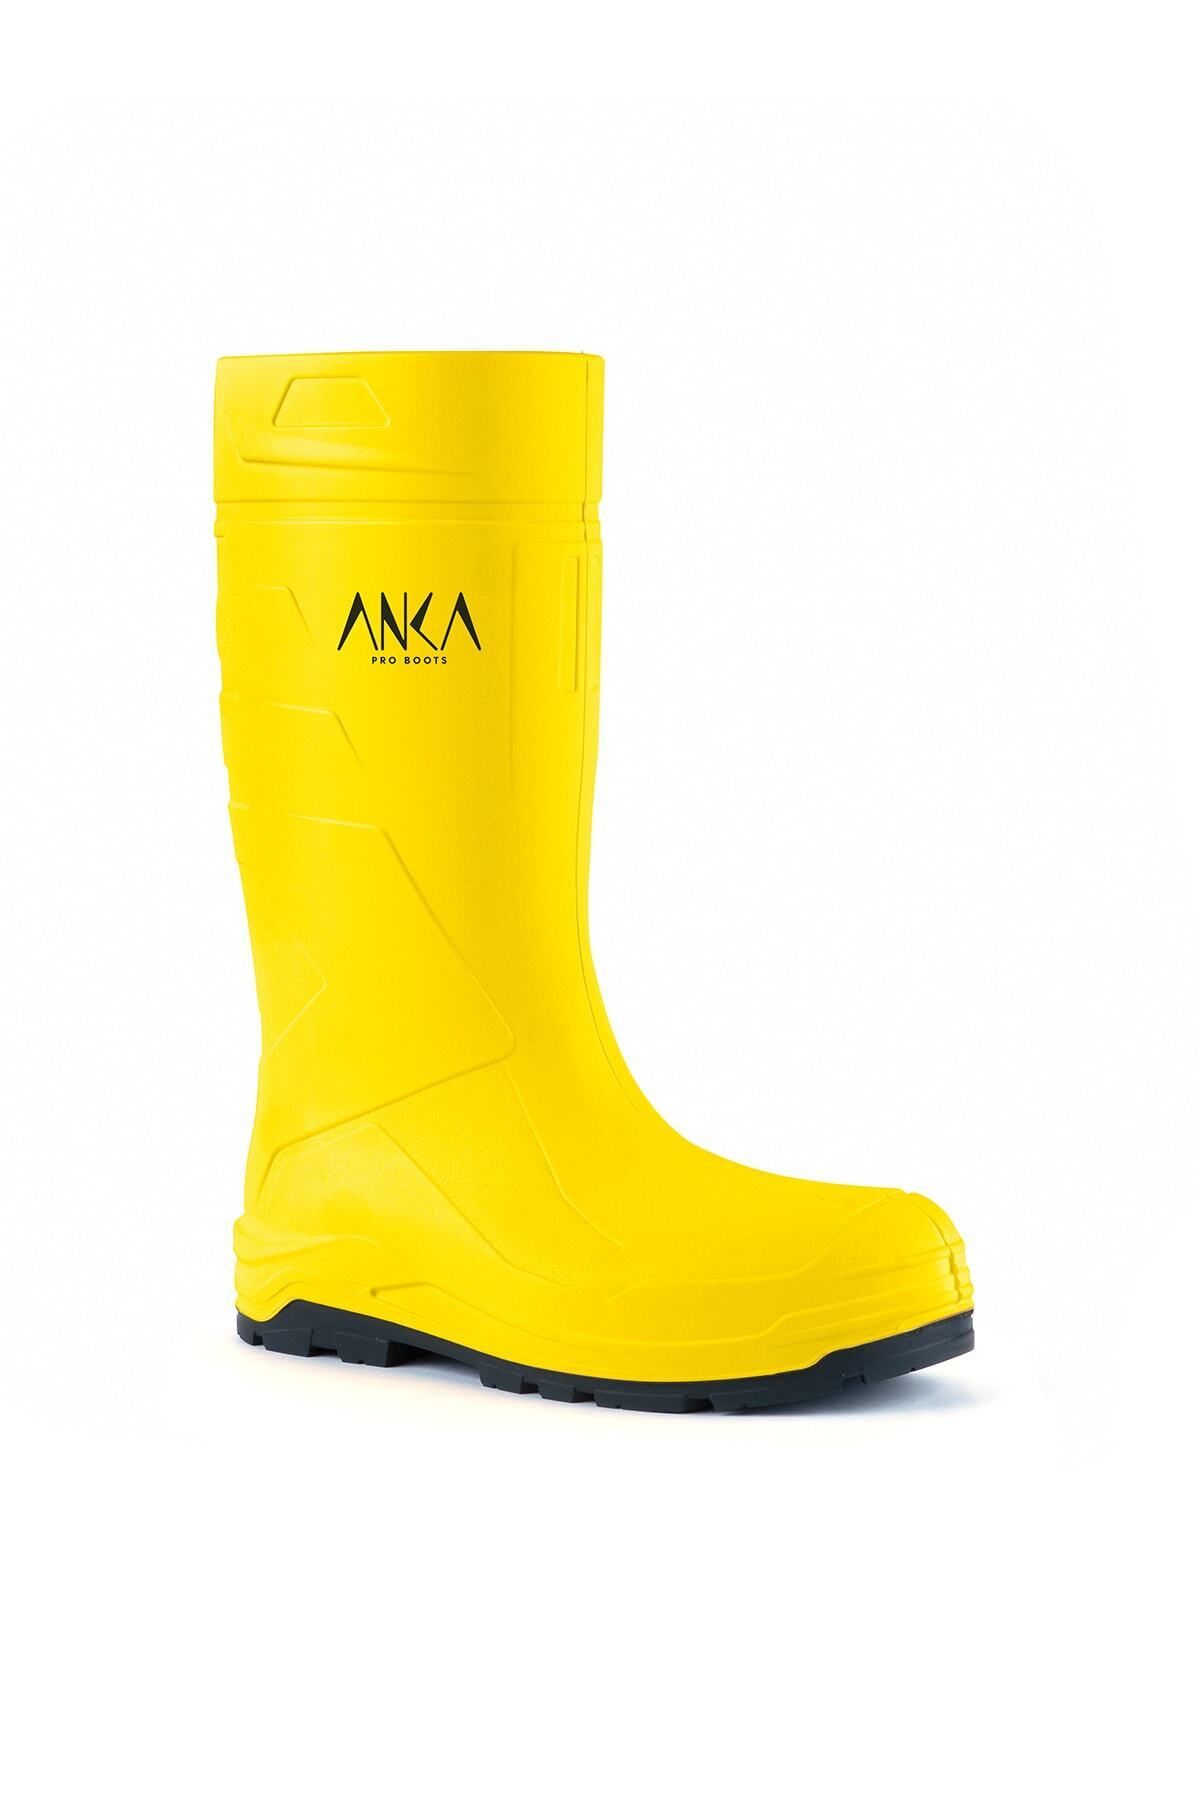 Anka Pro Boots 904 S4